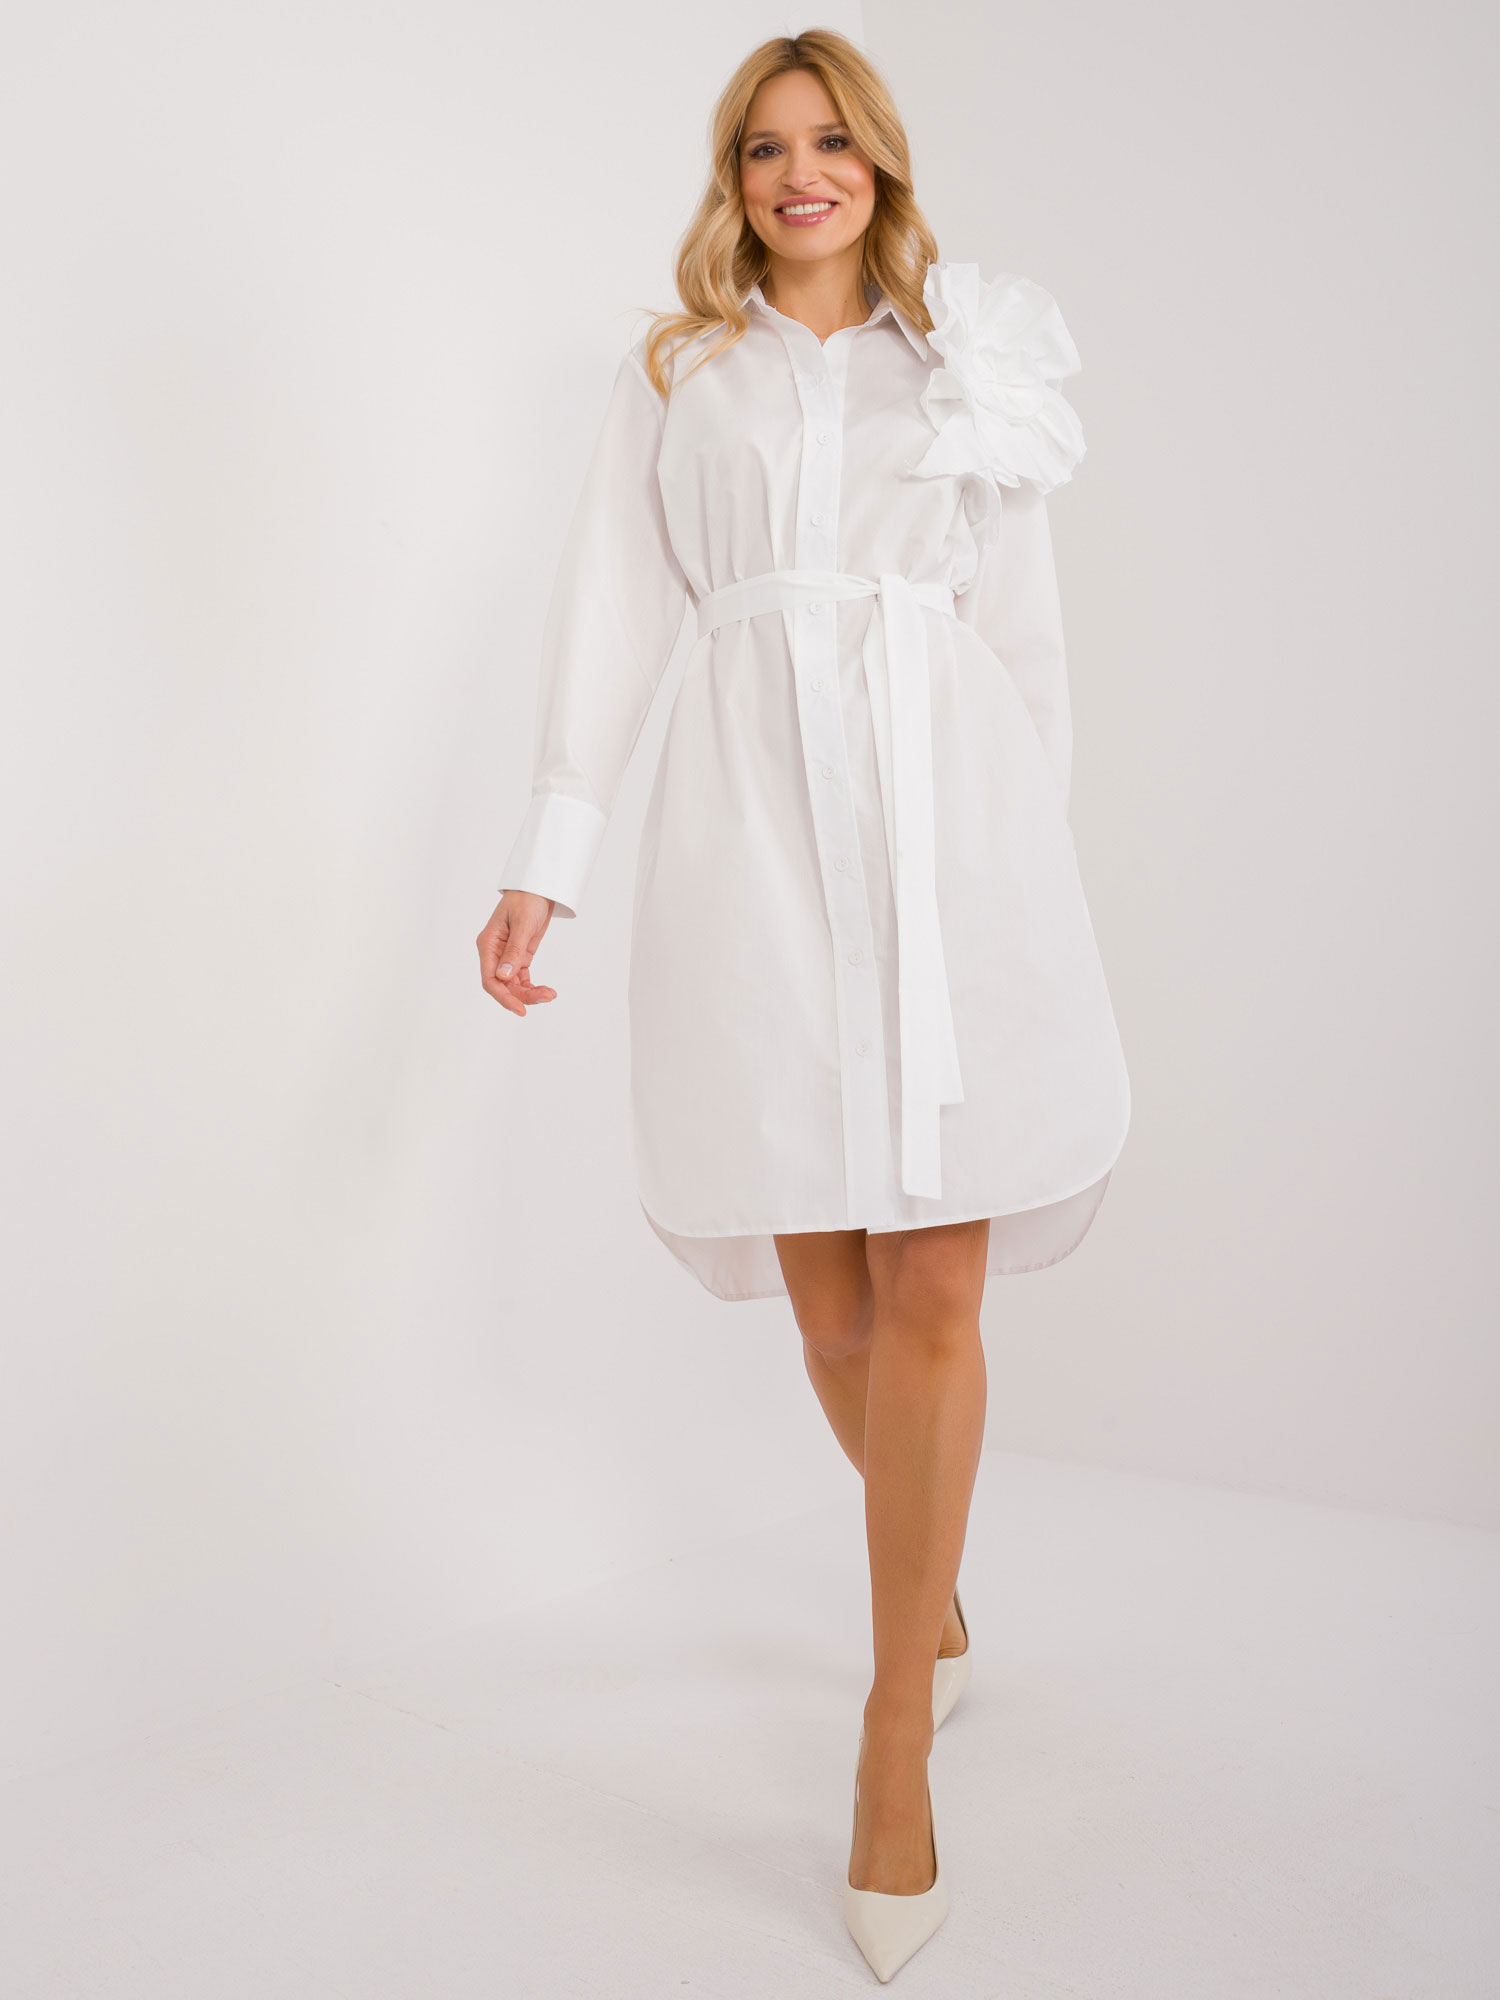 Bílé asymetrické košilové šaty s páskem a květinou LK-SK-509613.03-white Velikost: ONE SIZE